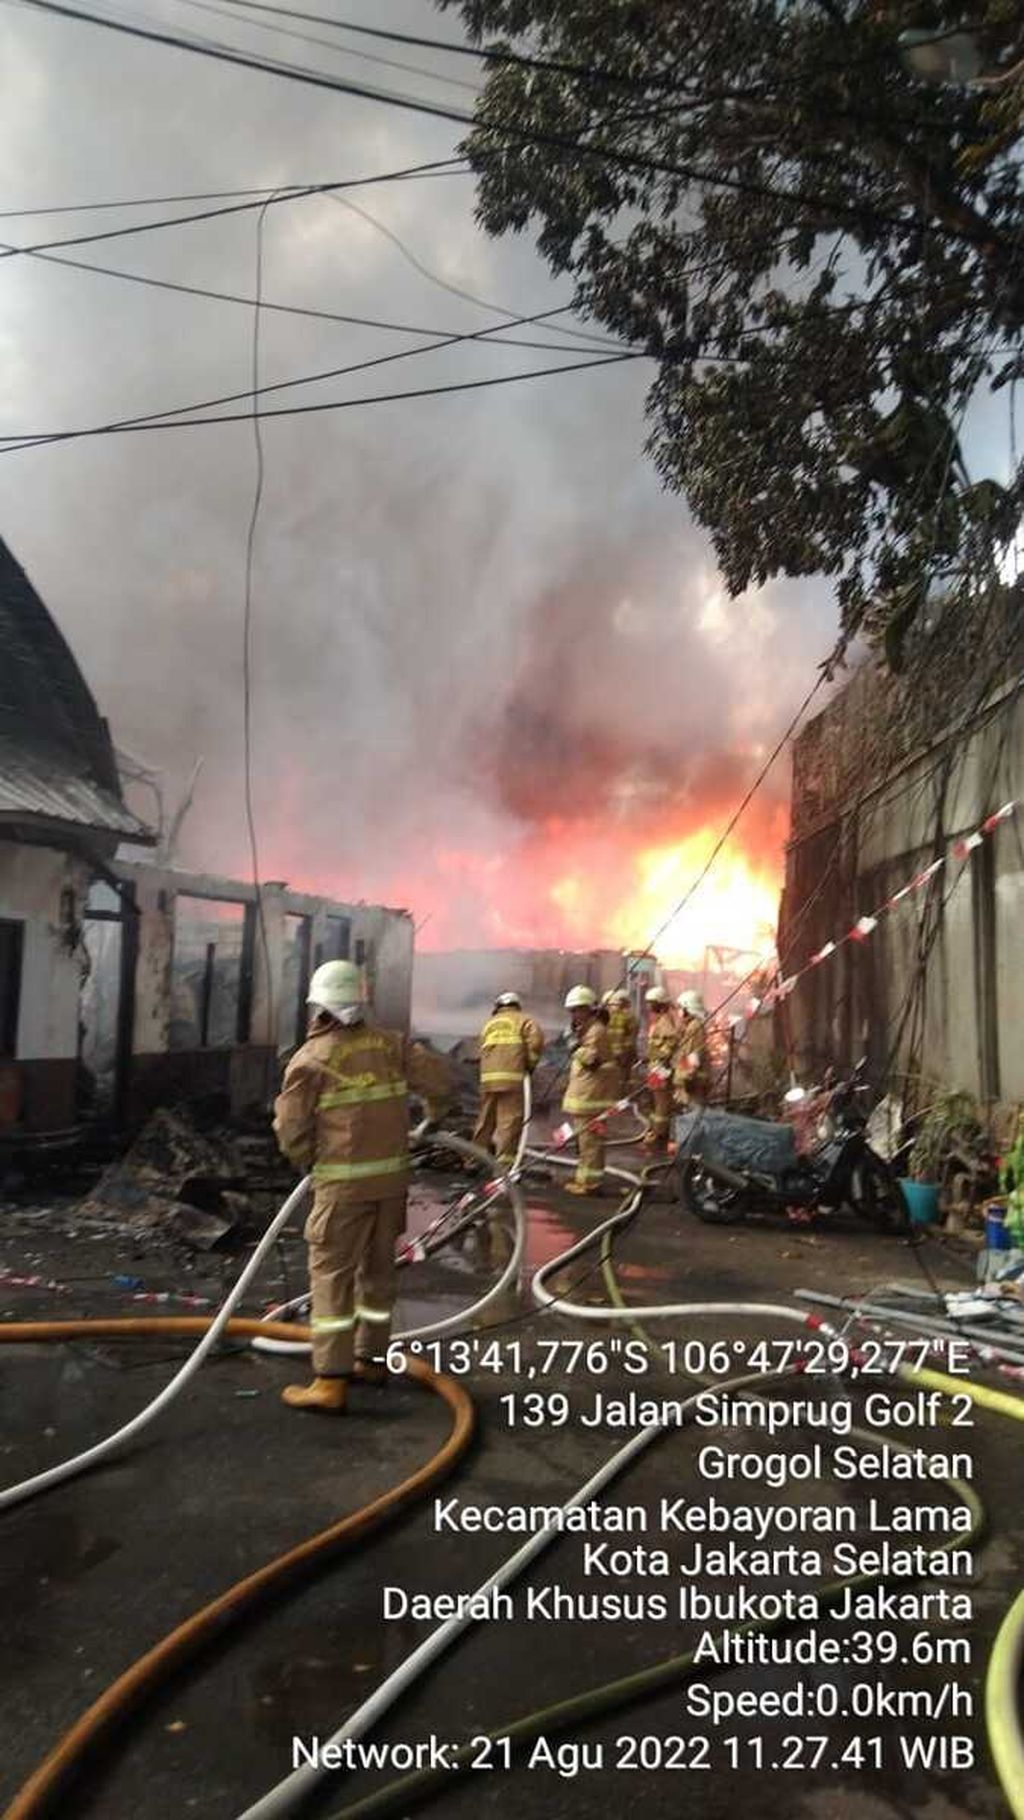 Suasana proses pemadaman kebakaran di permukiman warga di Jalan Simprug Golf II RT 004 RW 008, Kelurahan Grogol Selatan, Kecamatan Kebayoran Lama, Jakarta Selatan, terbakar, Minggu (21/8/2022) siang.